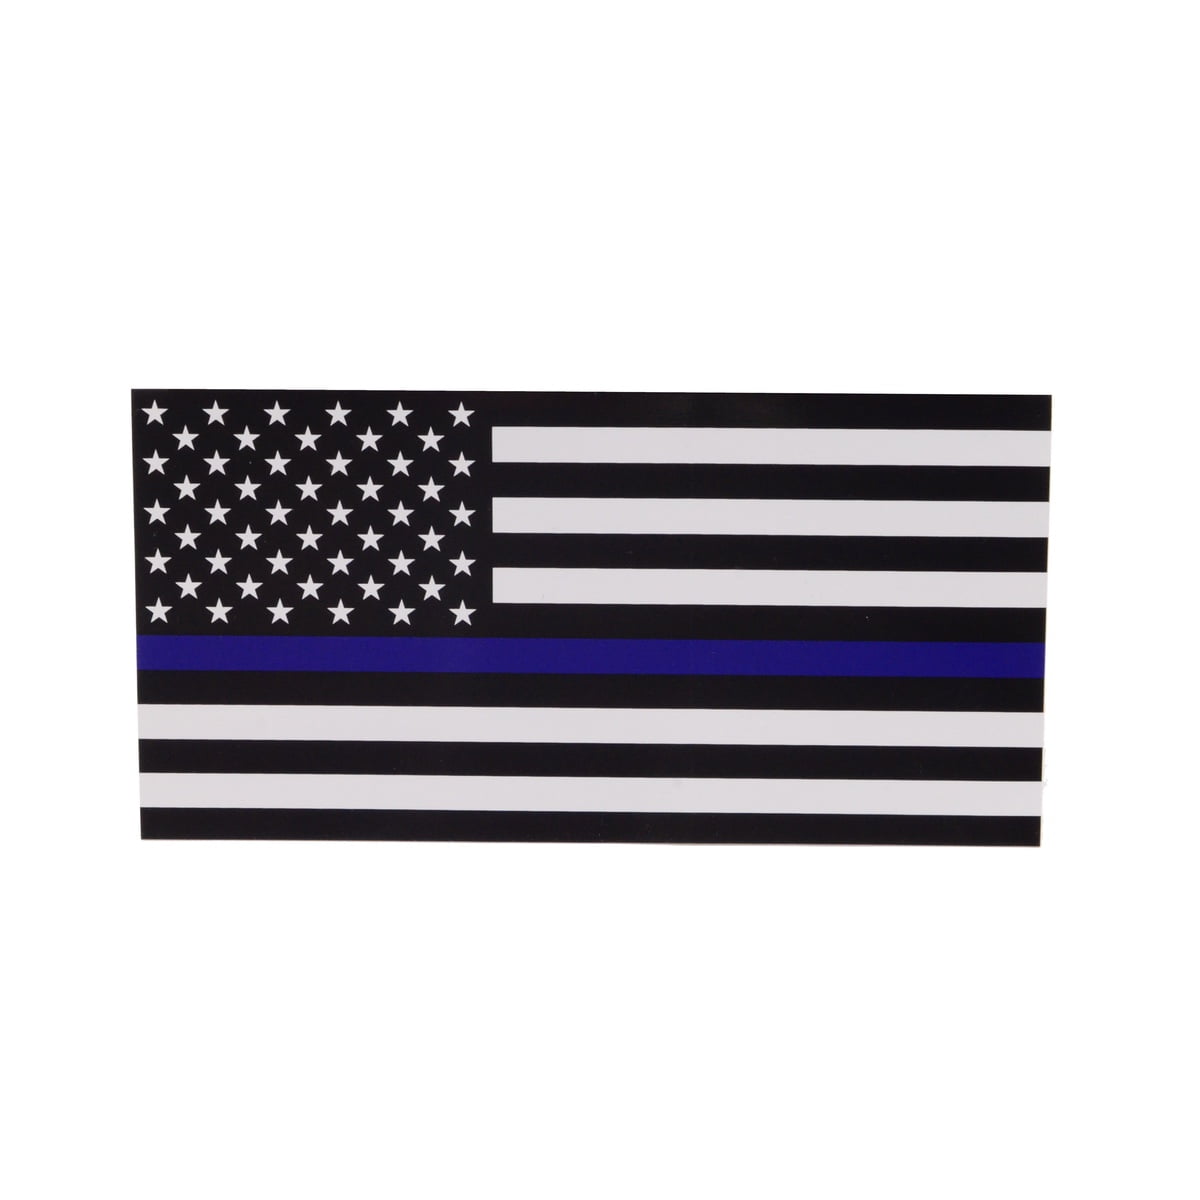 SUPPORT LAW ENFORCEMENT POLICE LIVES MATTER BLUE Black License Plate Frame NEW